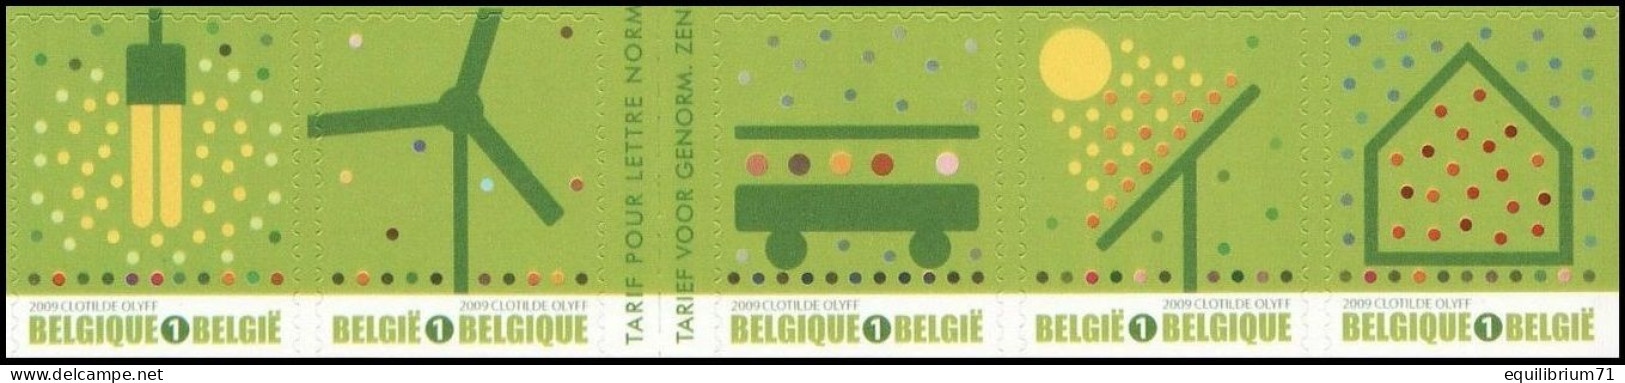 B104/C104**(3911-14 + 3915a) - Timbres Verts/Groene Zegels/Grüne Briefmarken - 1/2 Carnet/1/2 Boekje - BELGIQUE / BELGIË - 1997-… Validité Permanente [B]